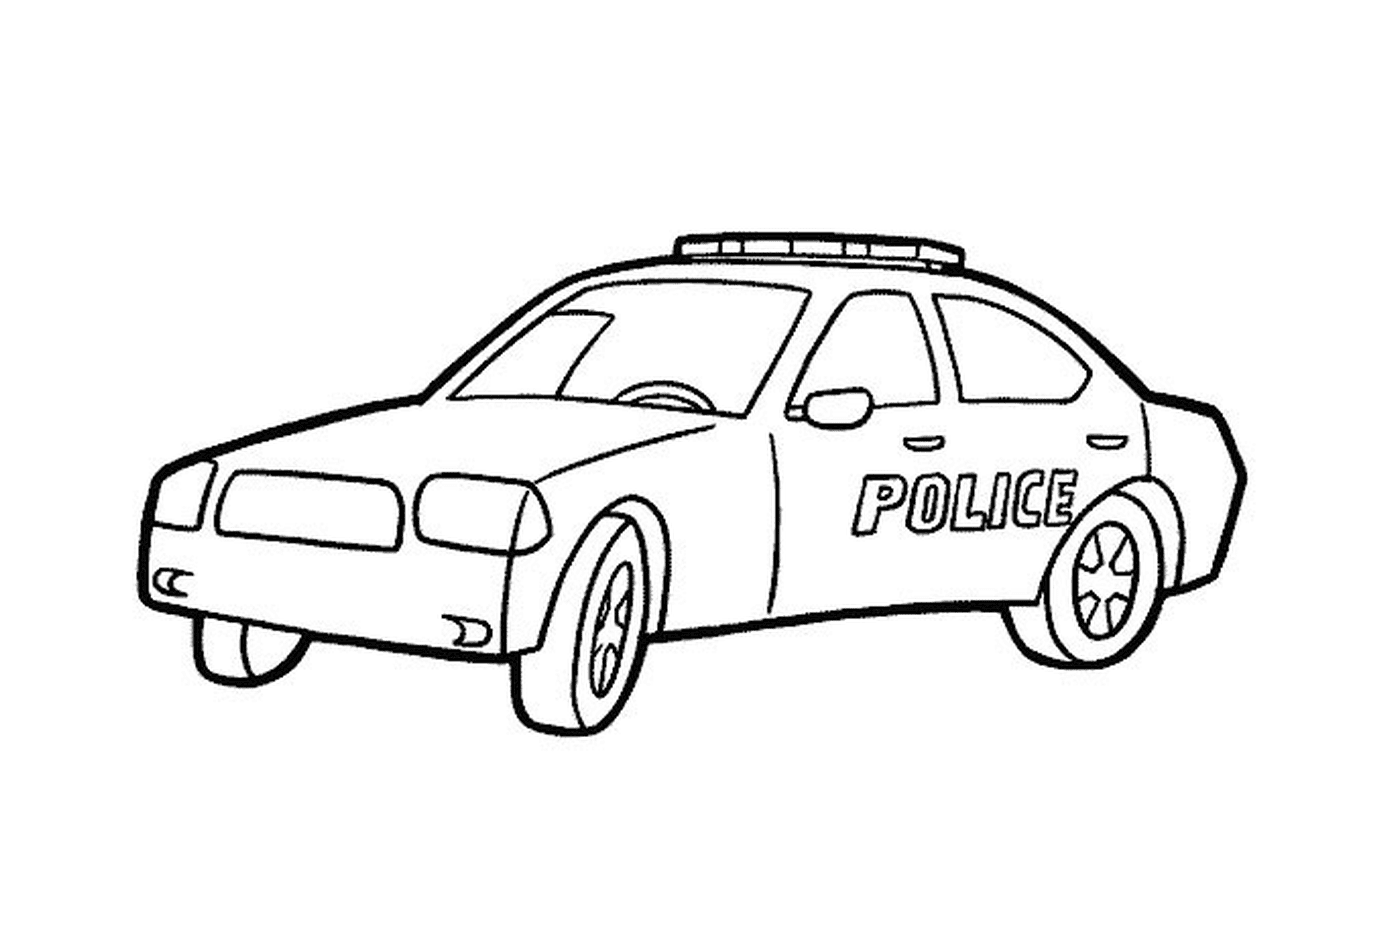  कार्तो पुलिस कार 